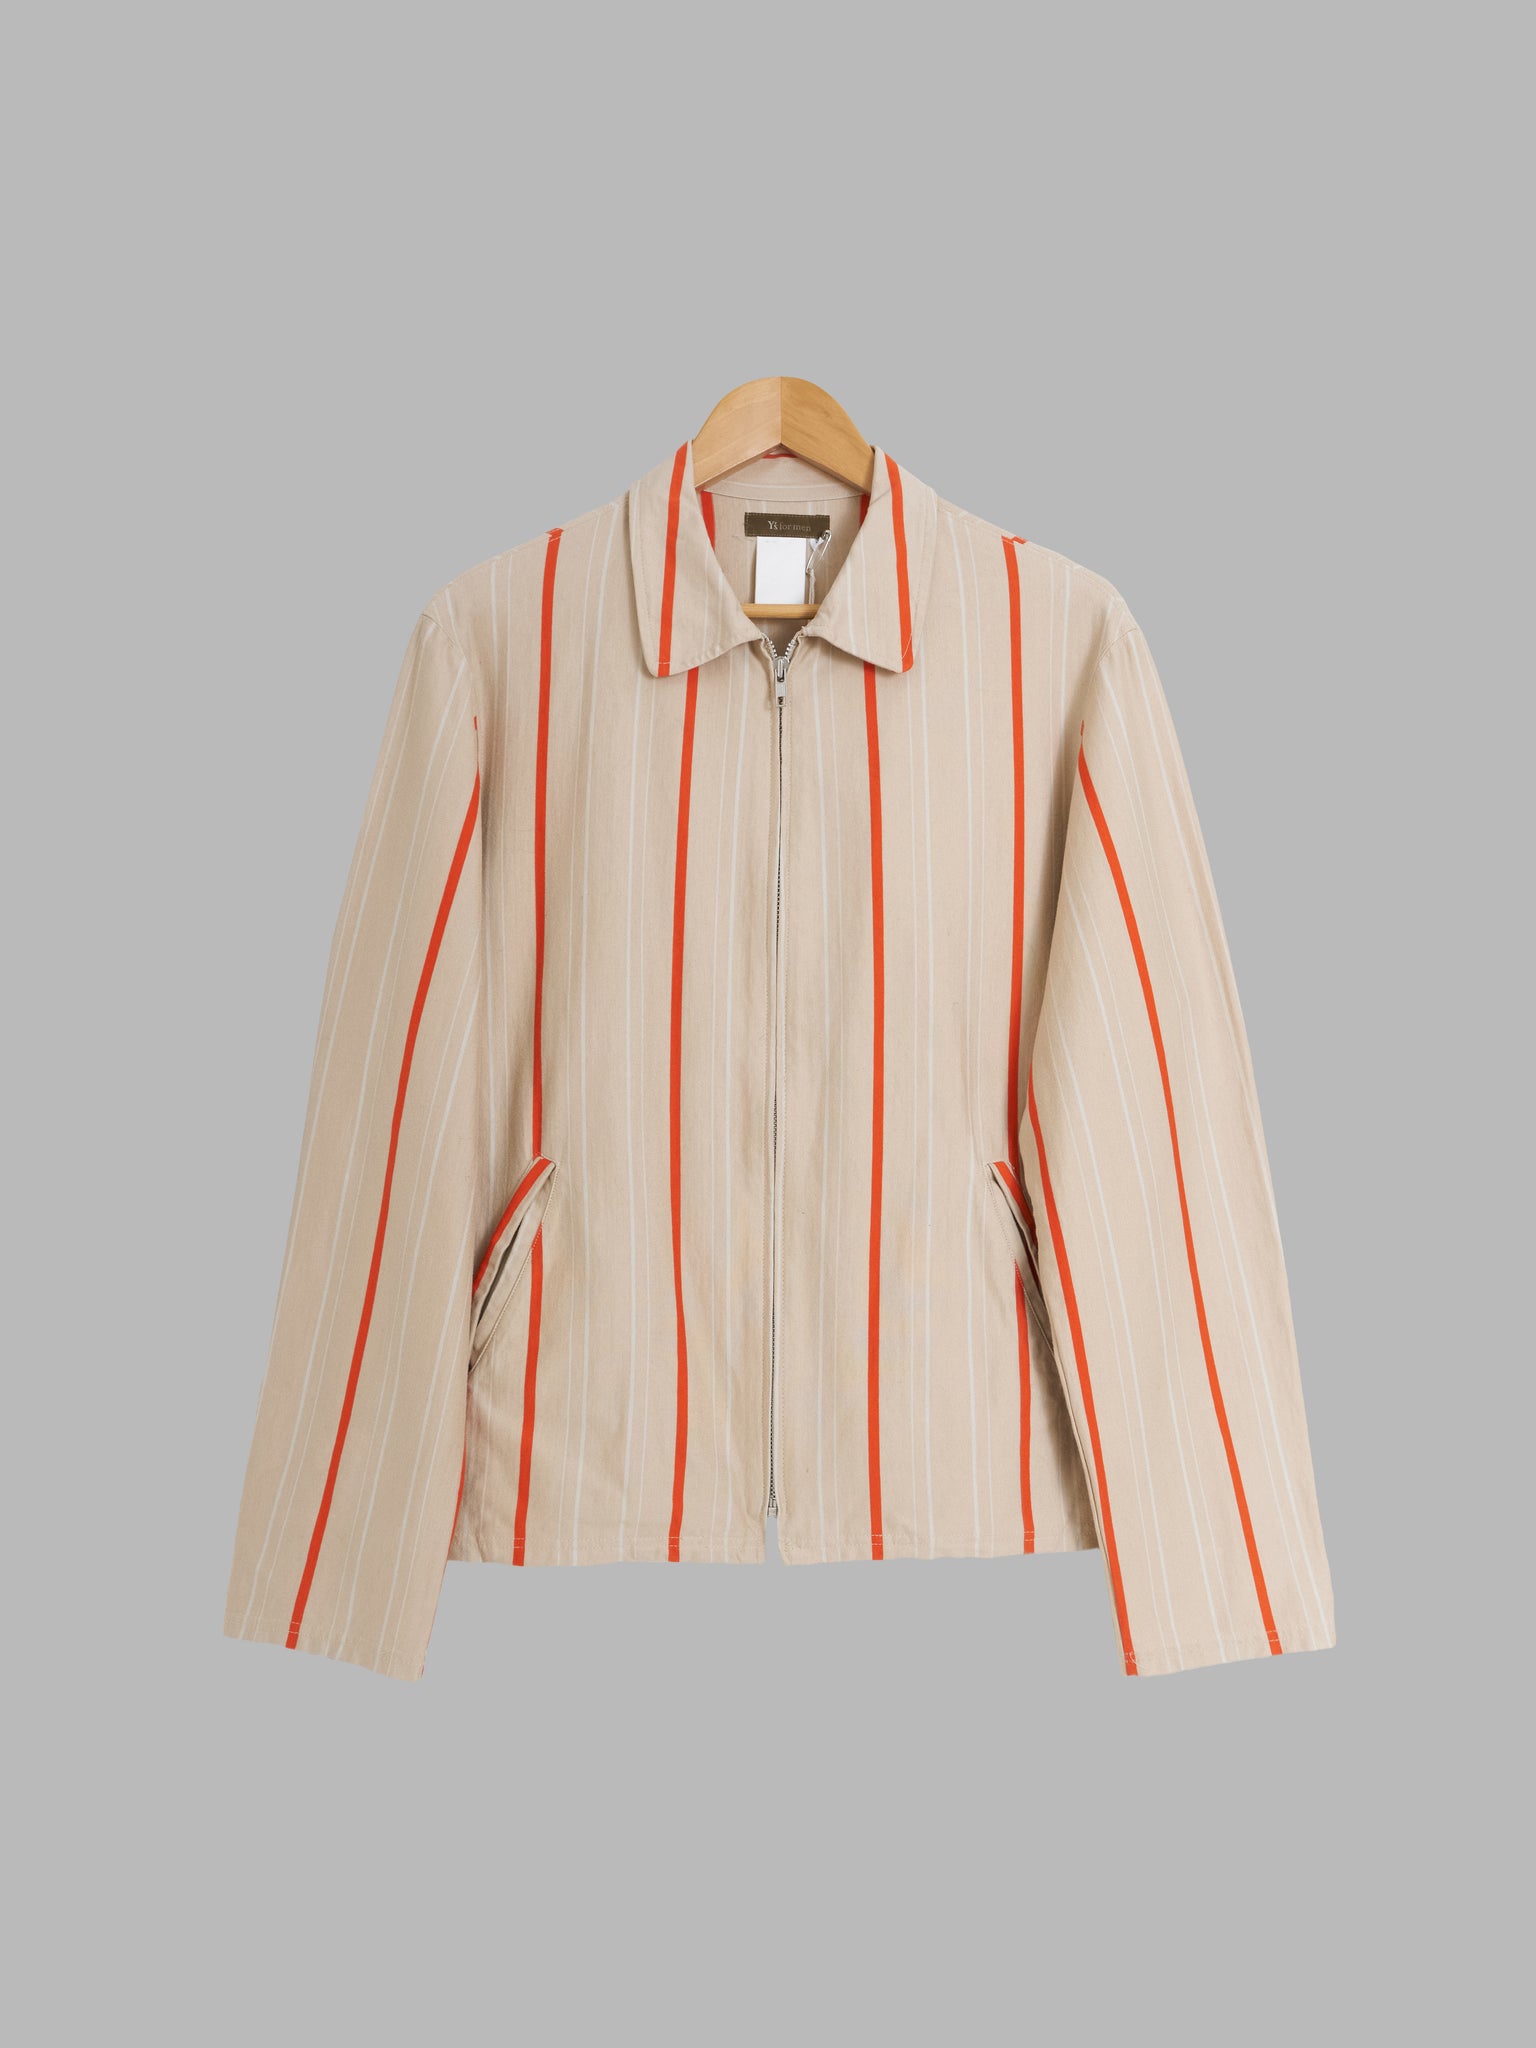 Y's for Men Yohji Yamamoto beige orange stripe jersey knit zip jacket - size 3 M